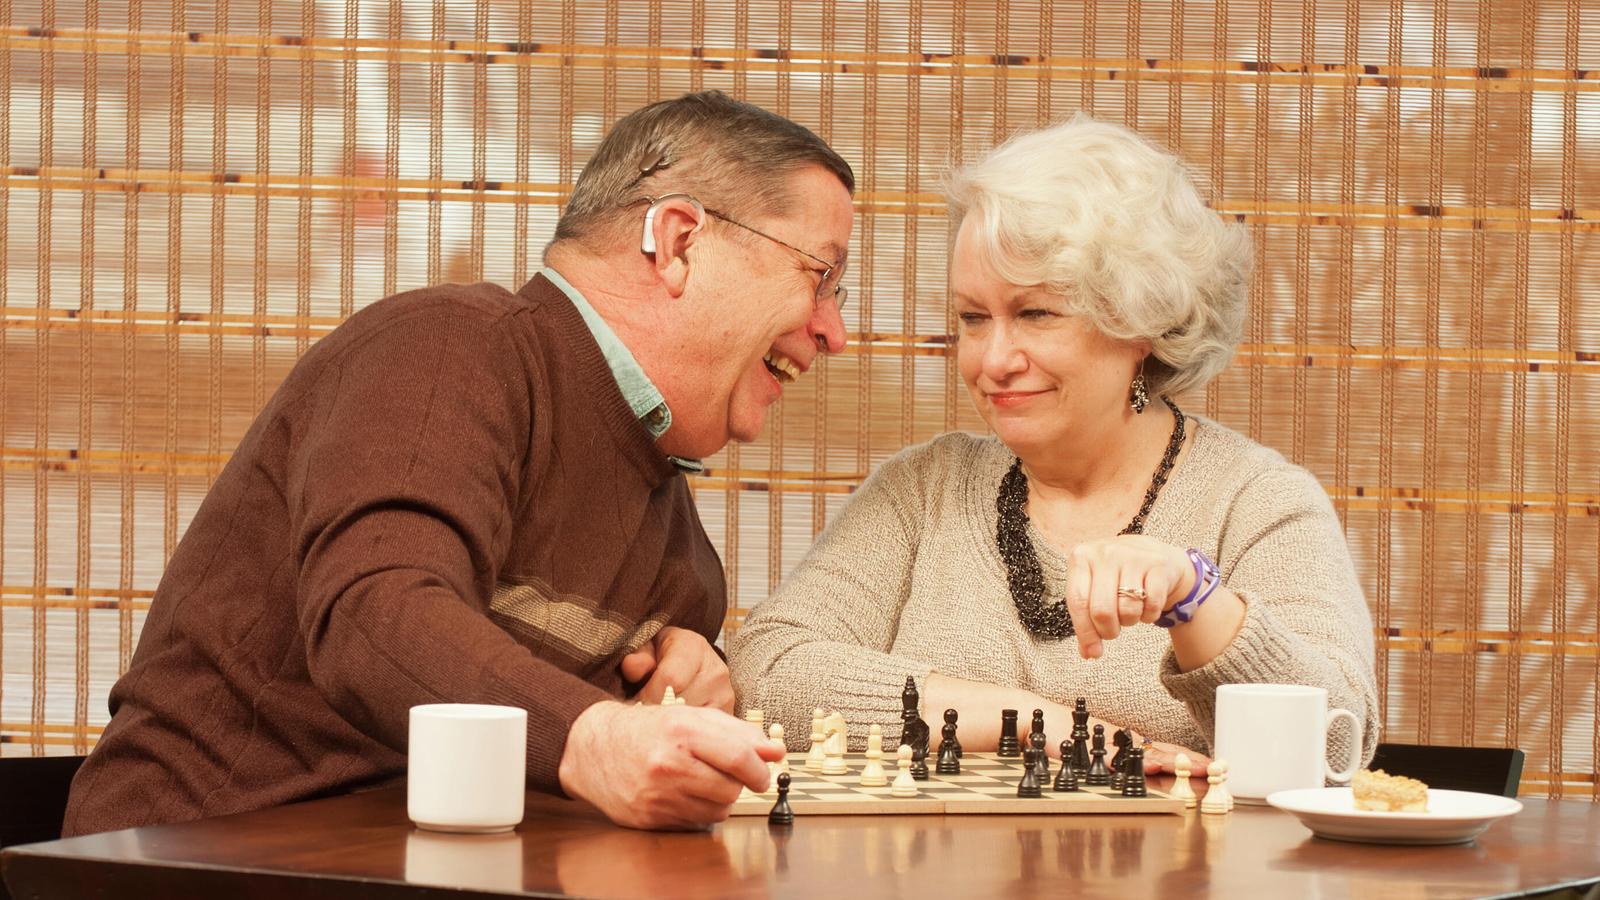 İmplant kullanıcı Bill ve eşi Pam satranç oyunu oynarken eğlenmektedirler